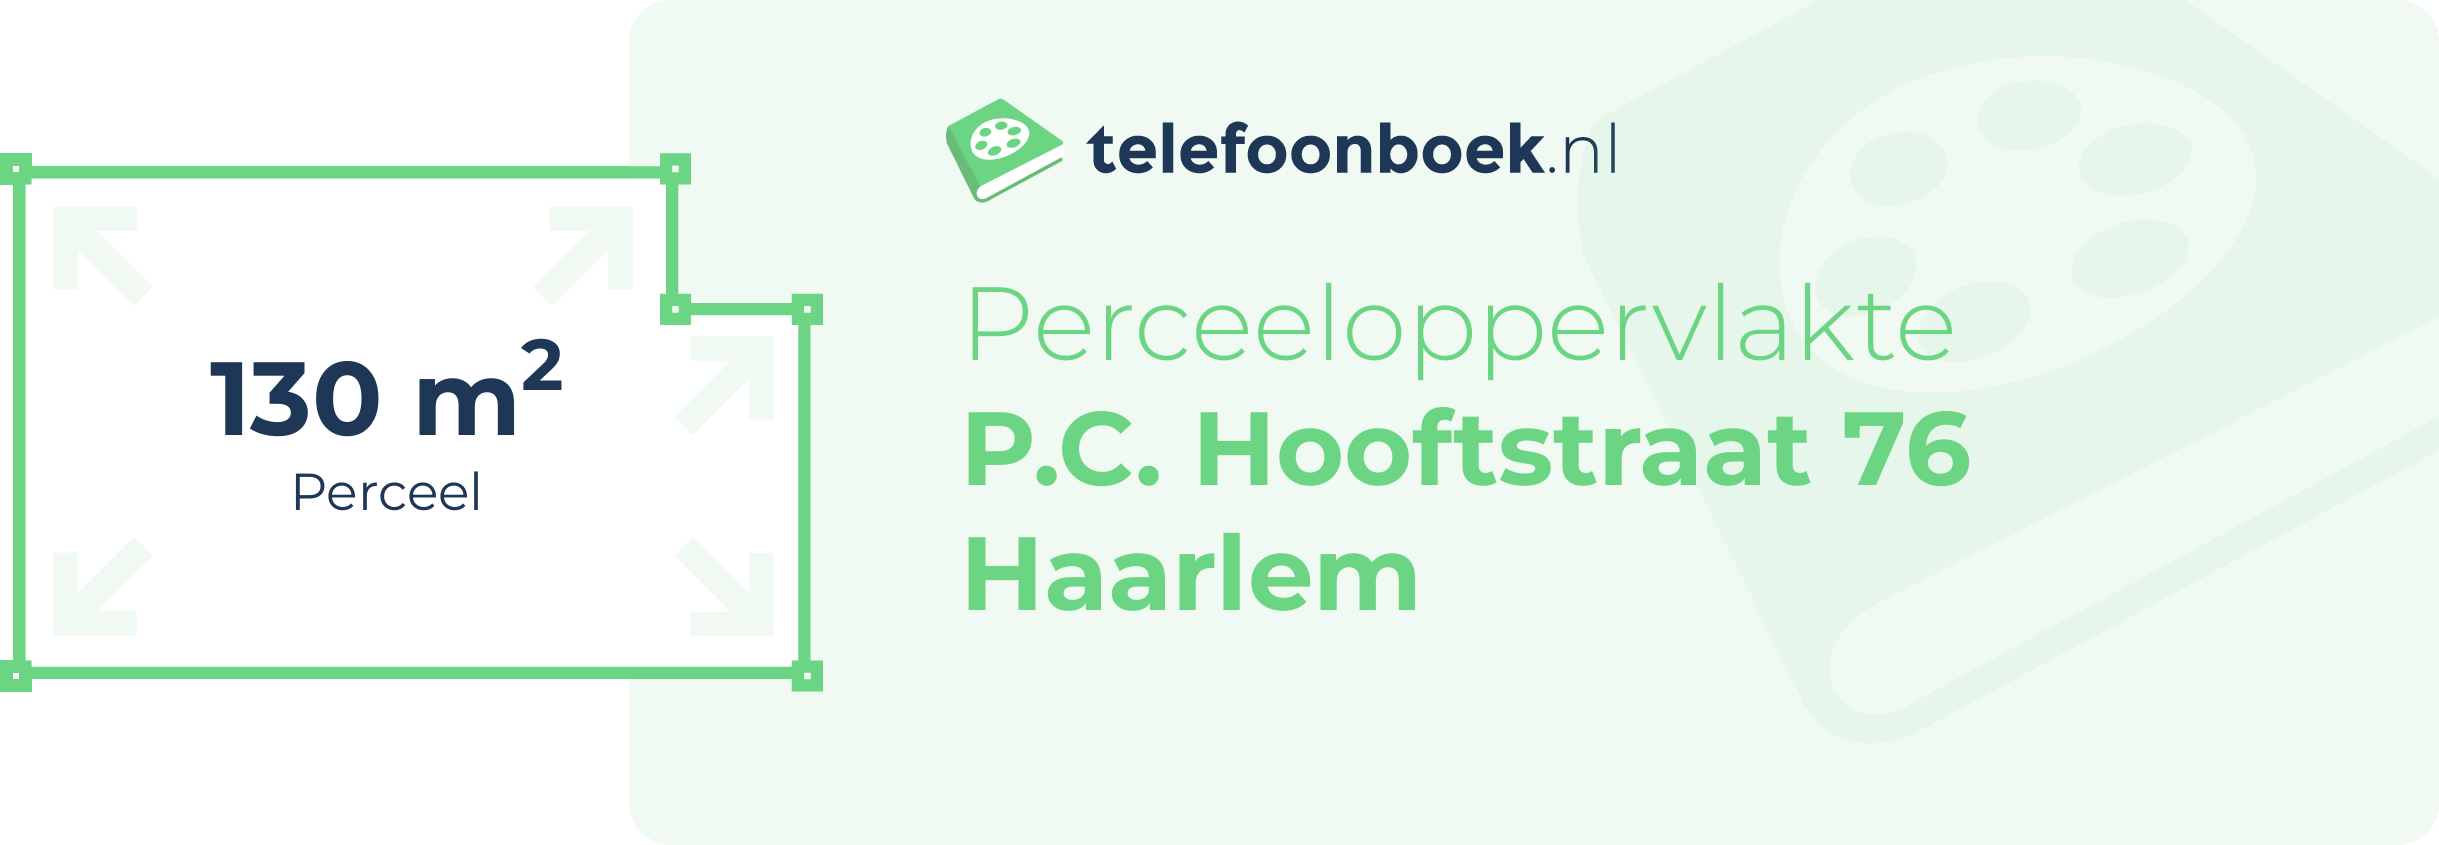 Perceeloppervlakte P.C. Hooftstraat 76 Haarlem